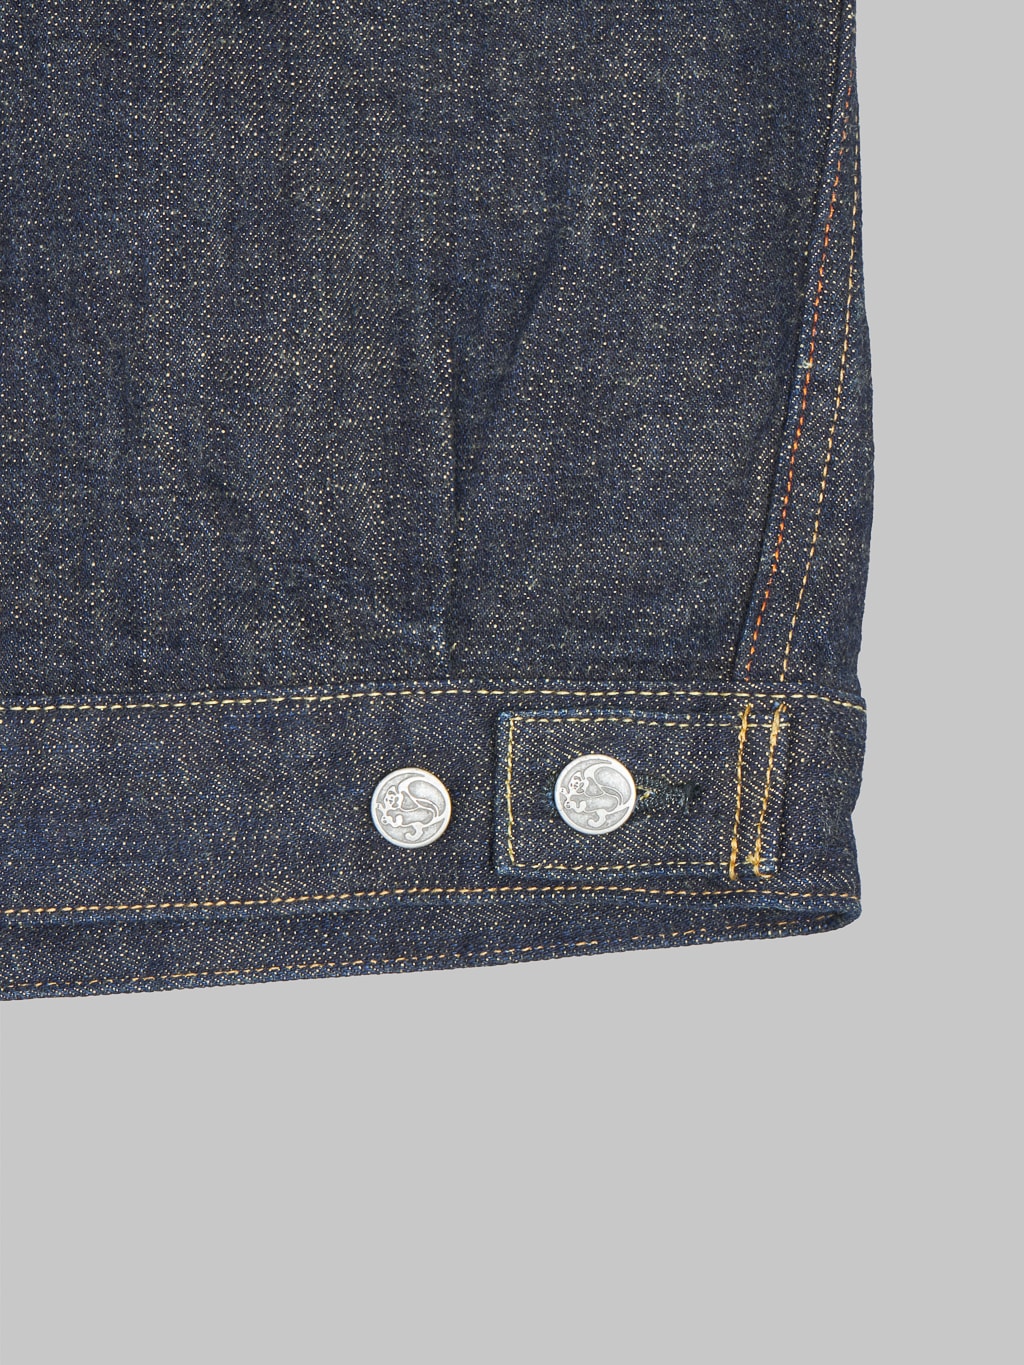 Tanuki soga selvedge denim type II jacket adjustable back tab